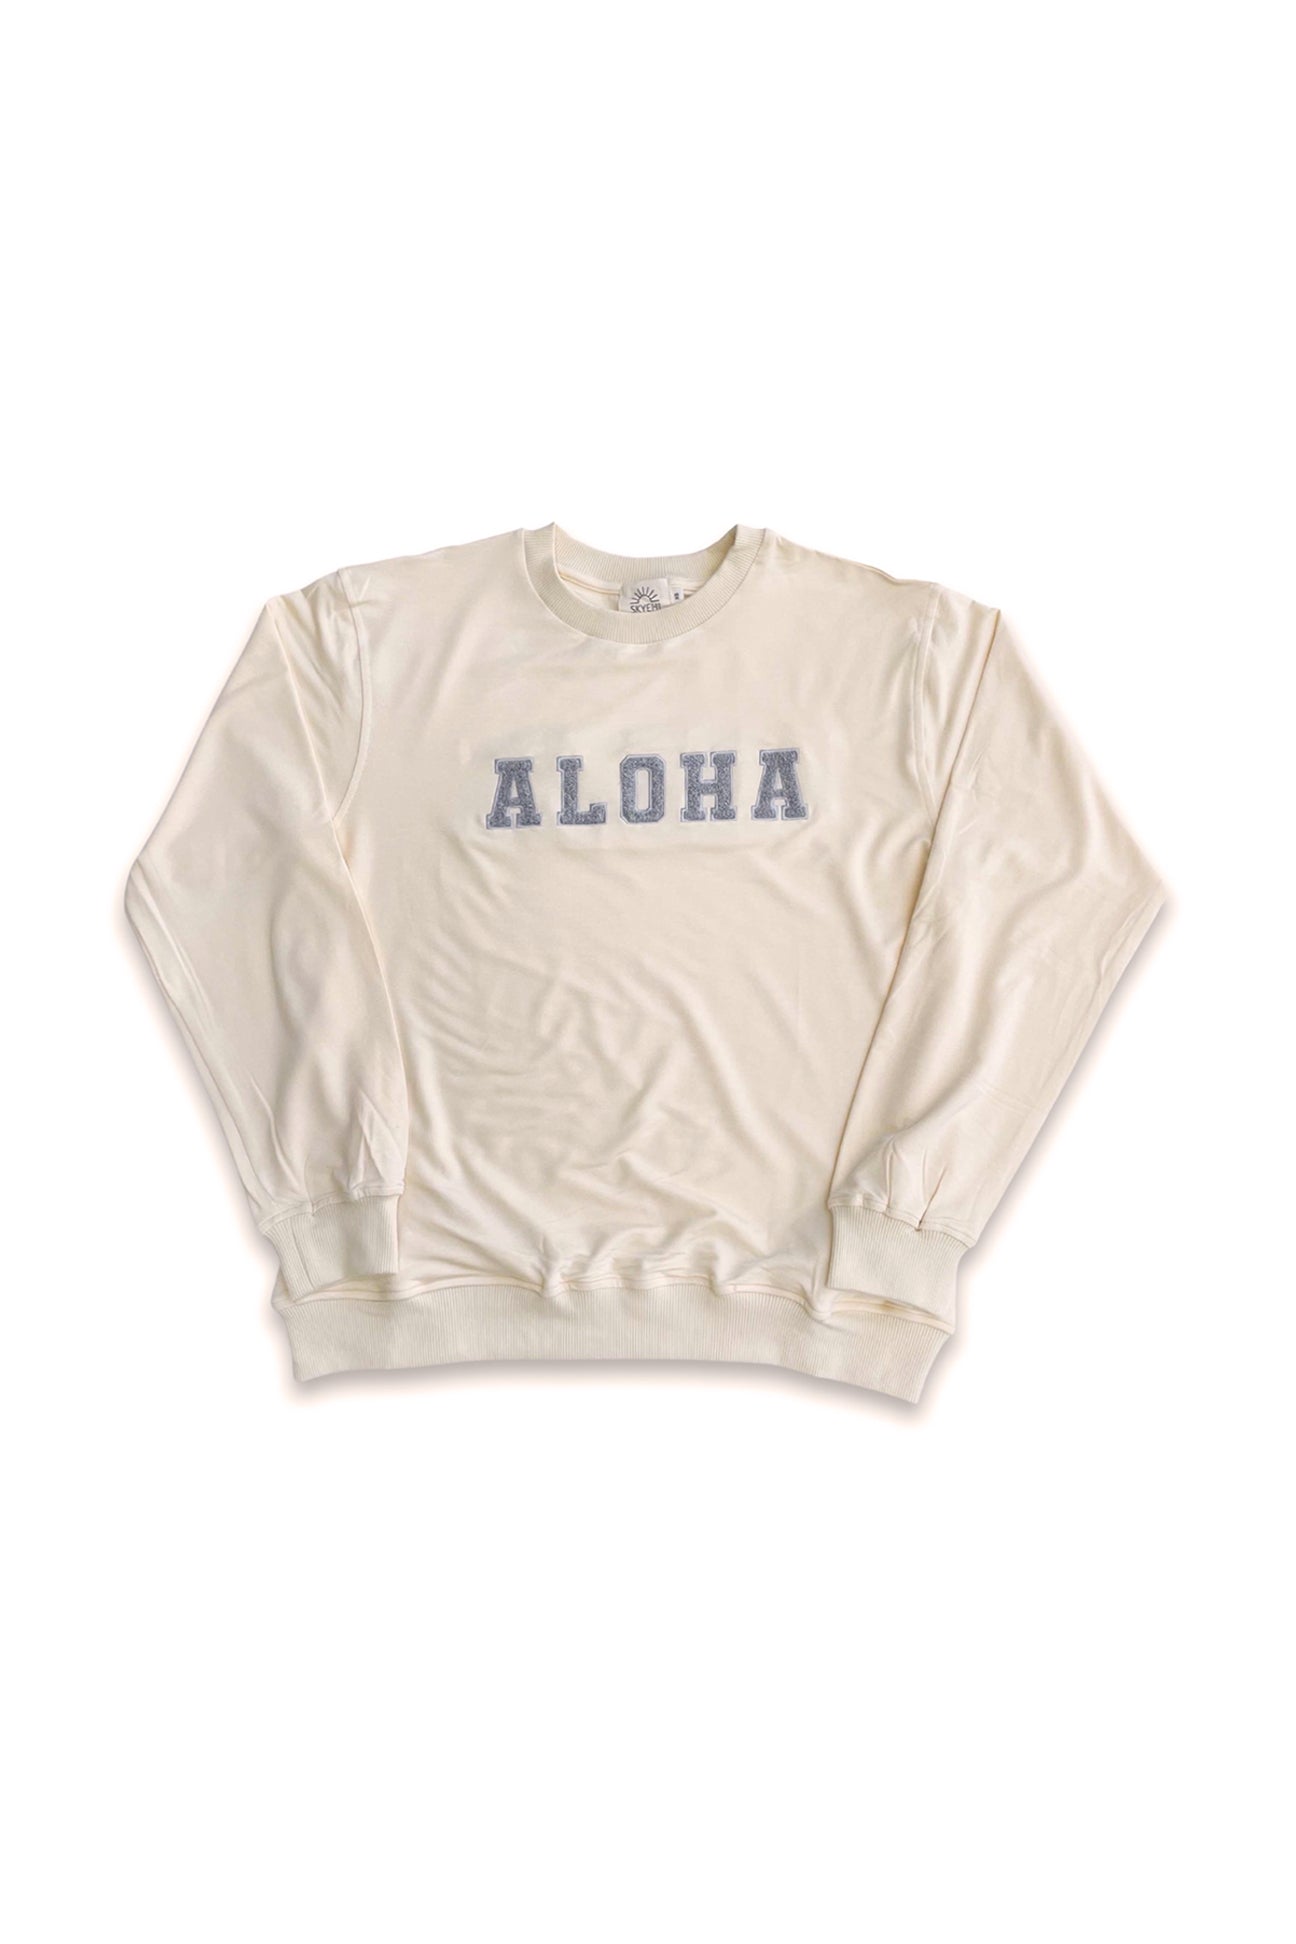 Adult ALOHA Sweatshirt